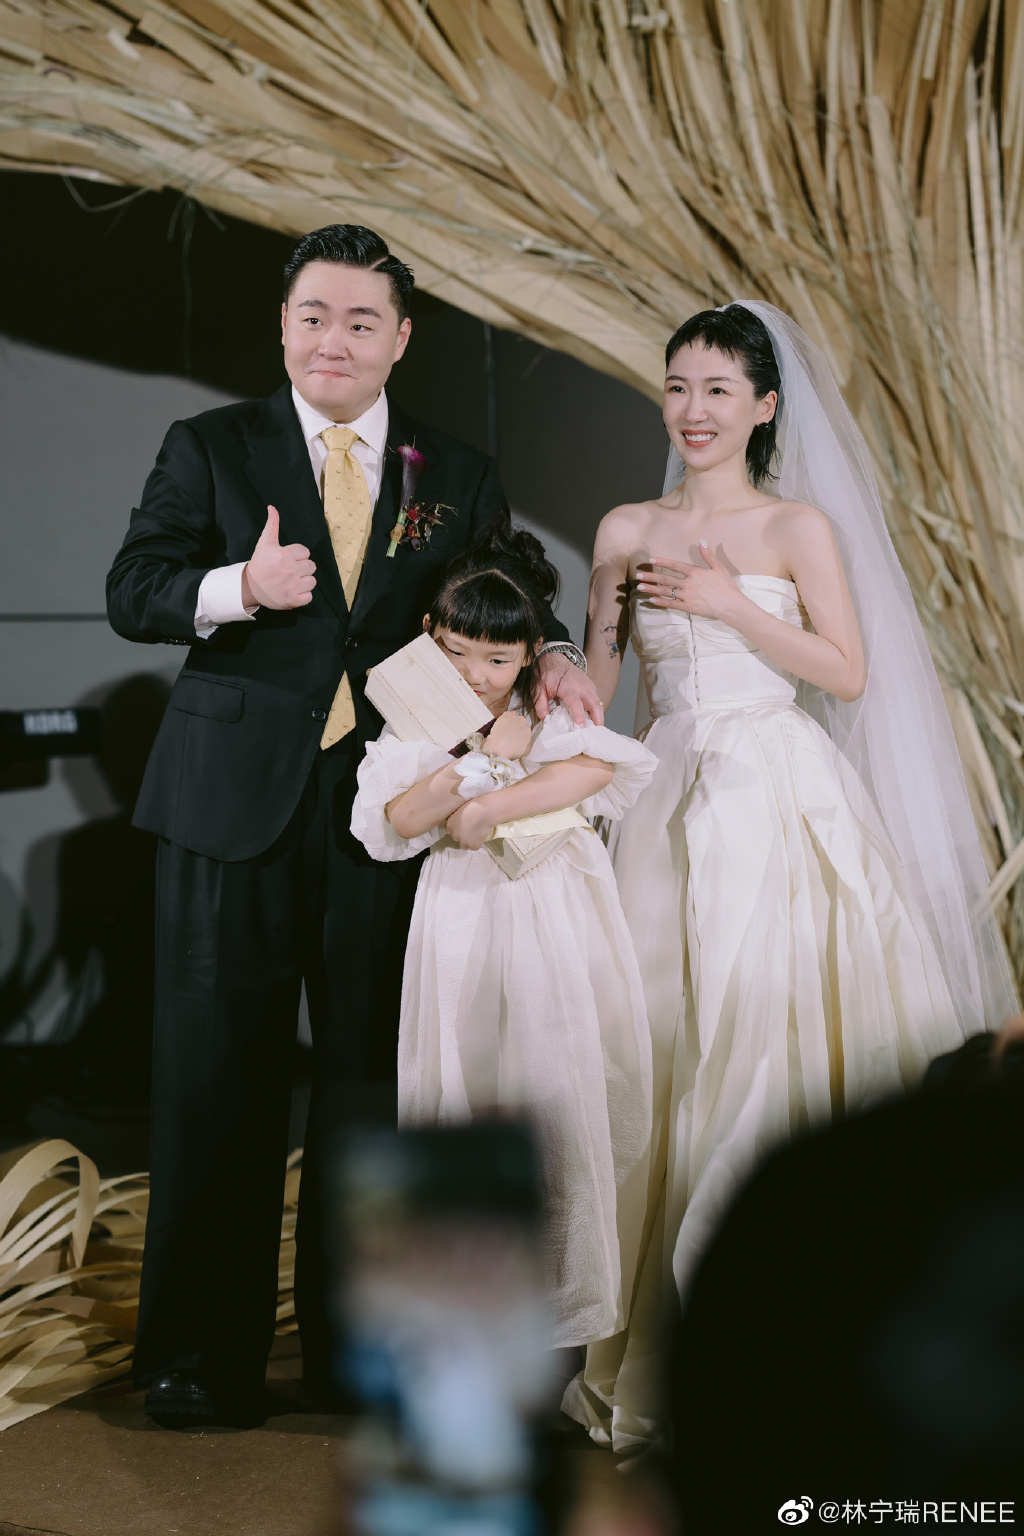 郝劭文太太今在微博公开更多婚礼花絮照。